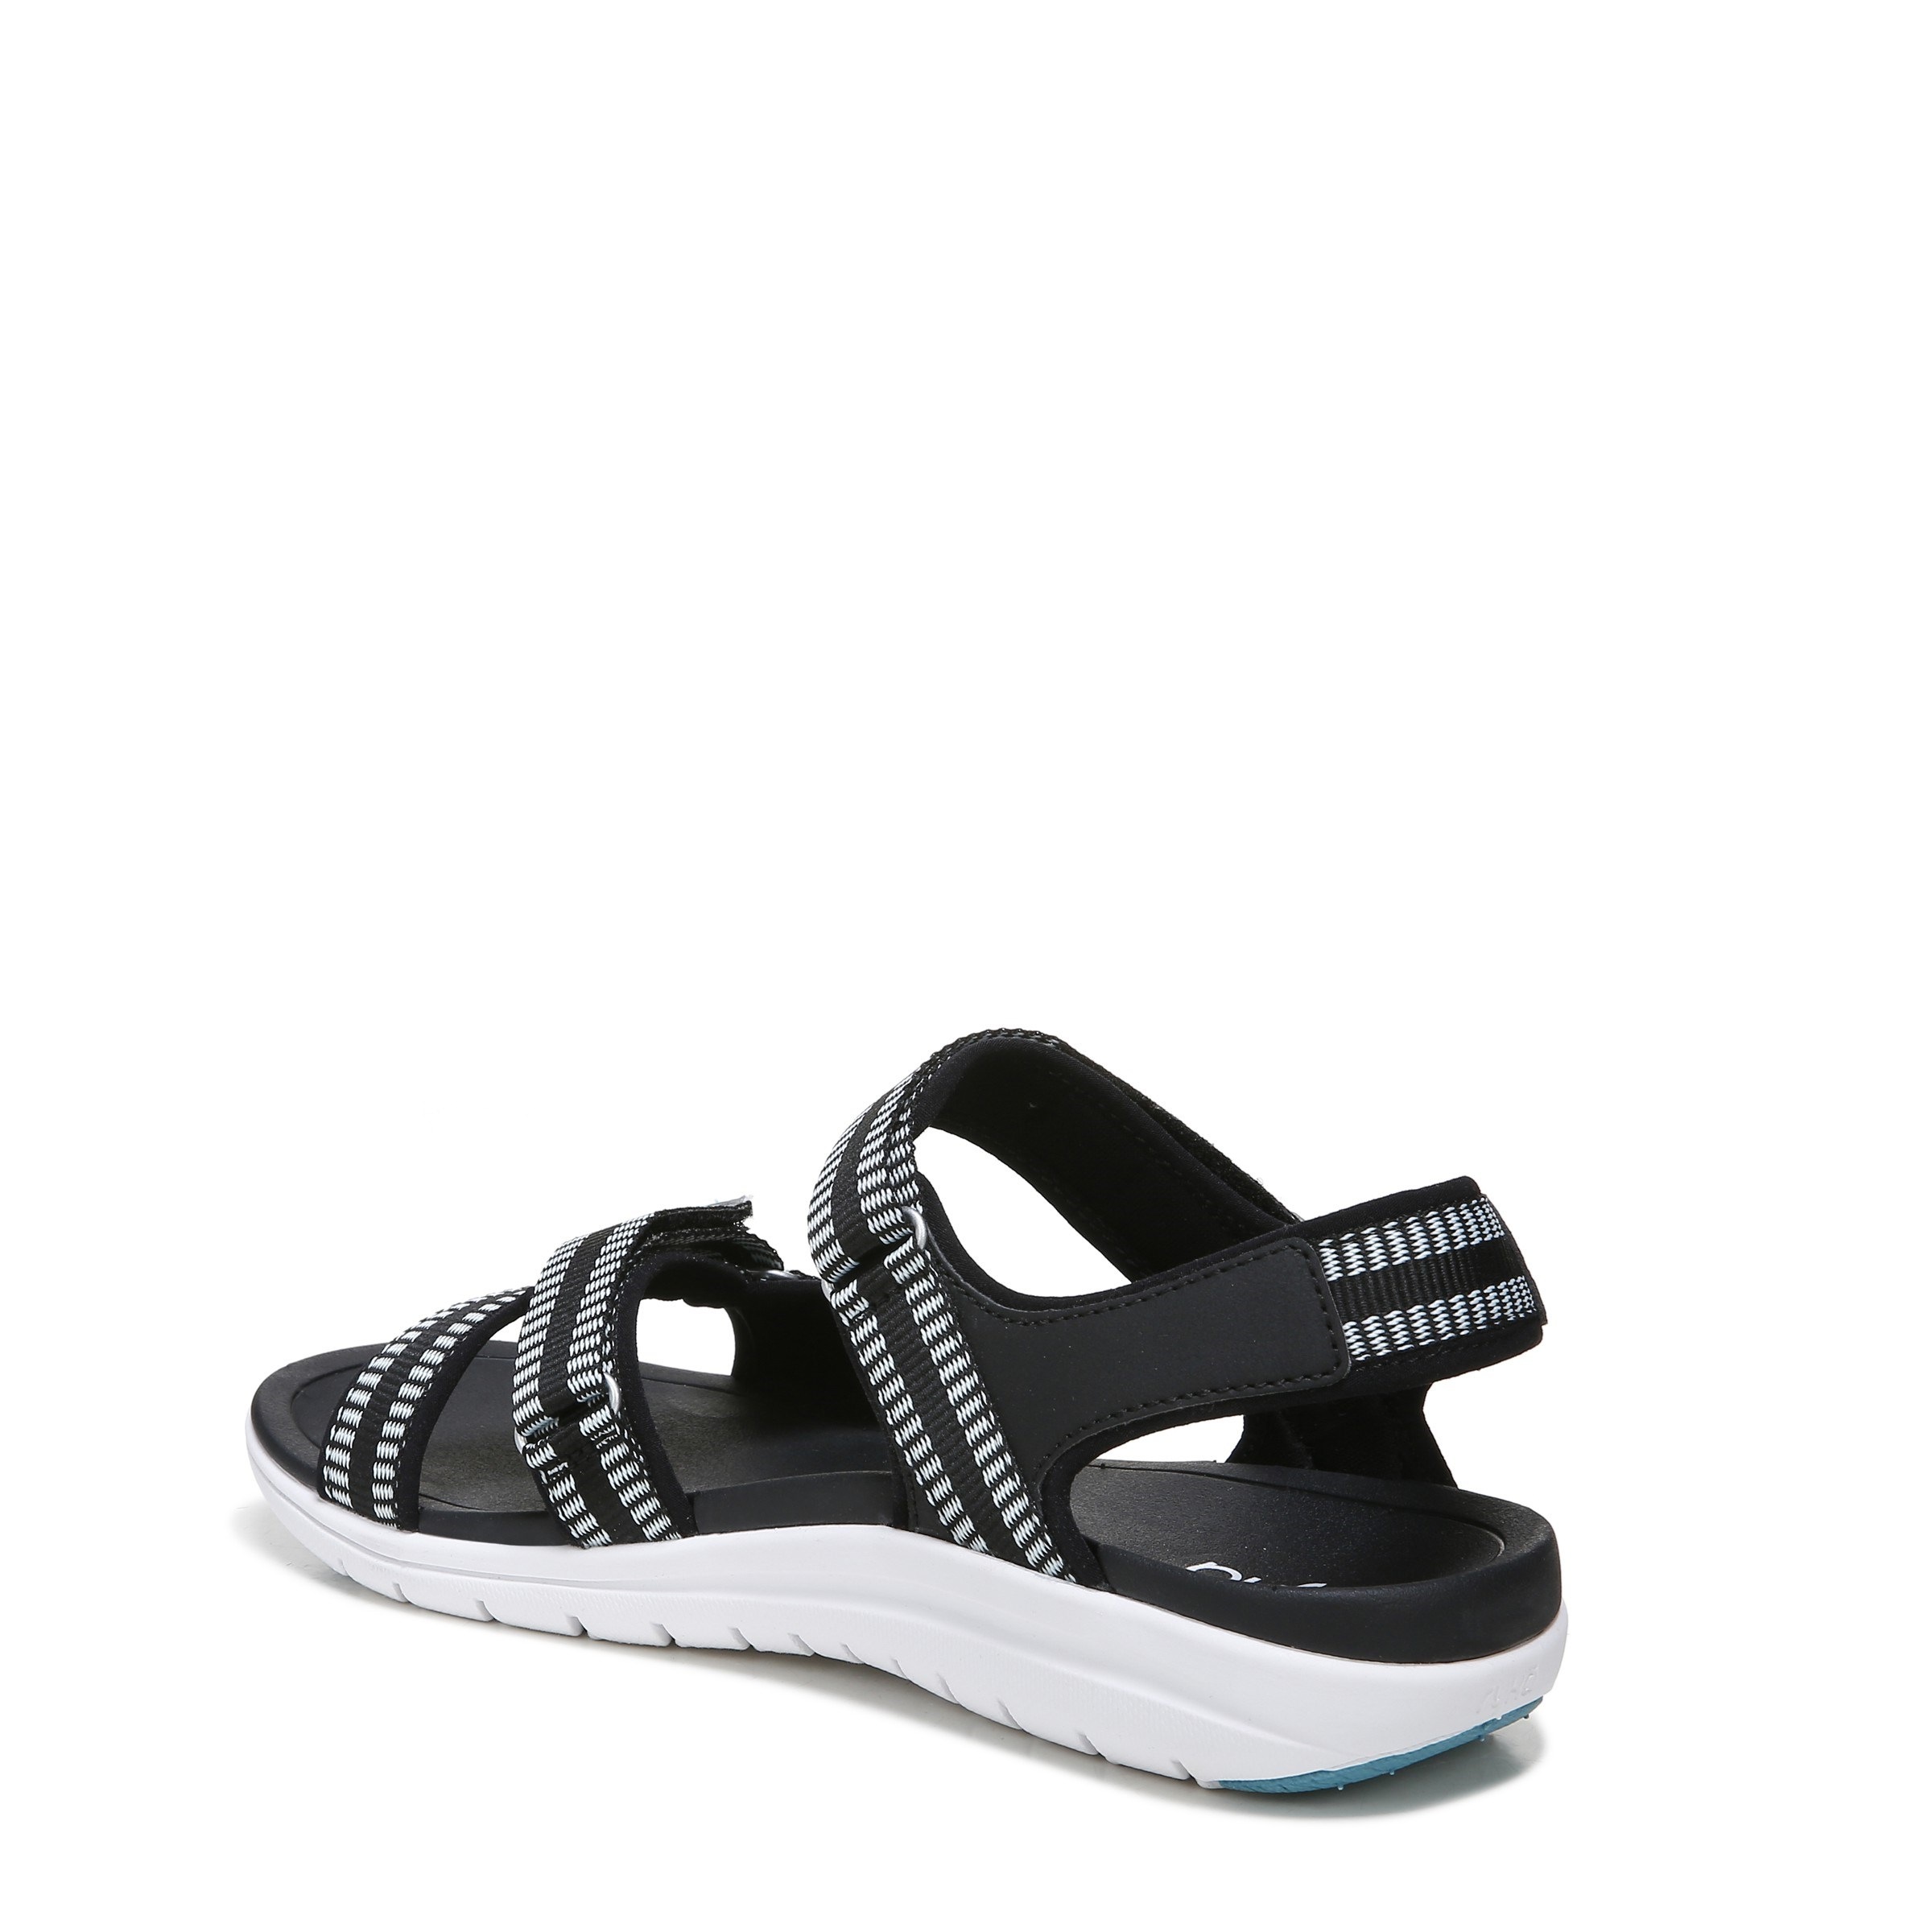 Ryka Womens~Savannah Sandals in:White/Grey w/Ankle Strap Hook Loop~U Choose Sz. 